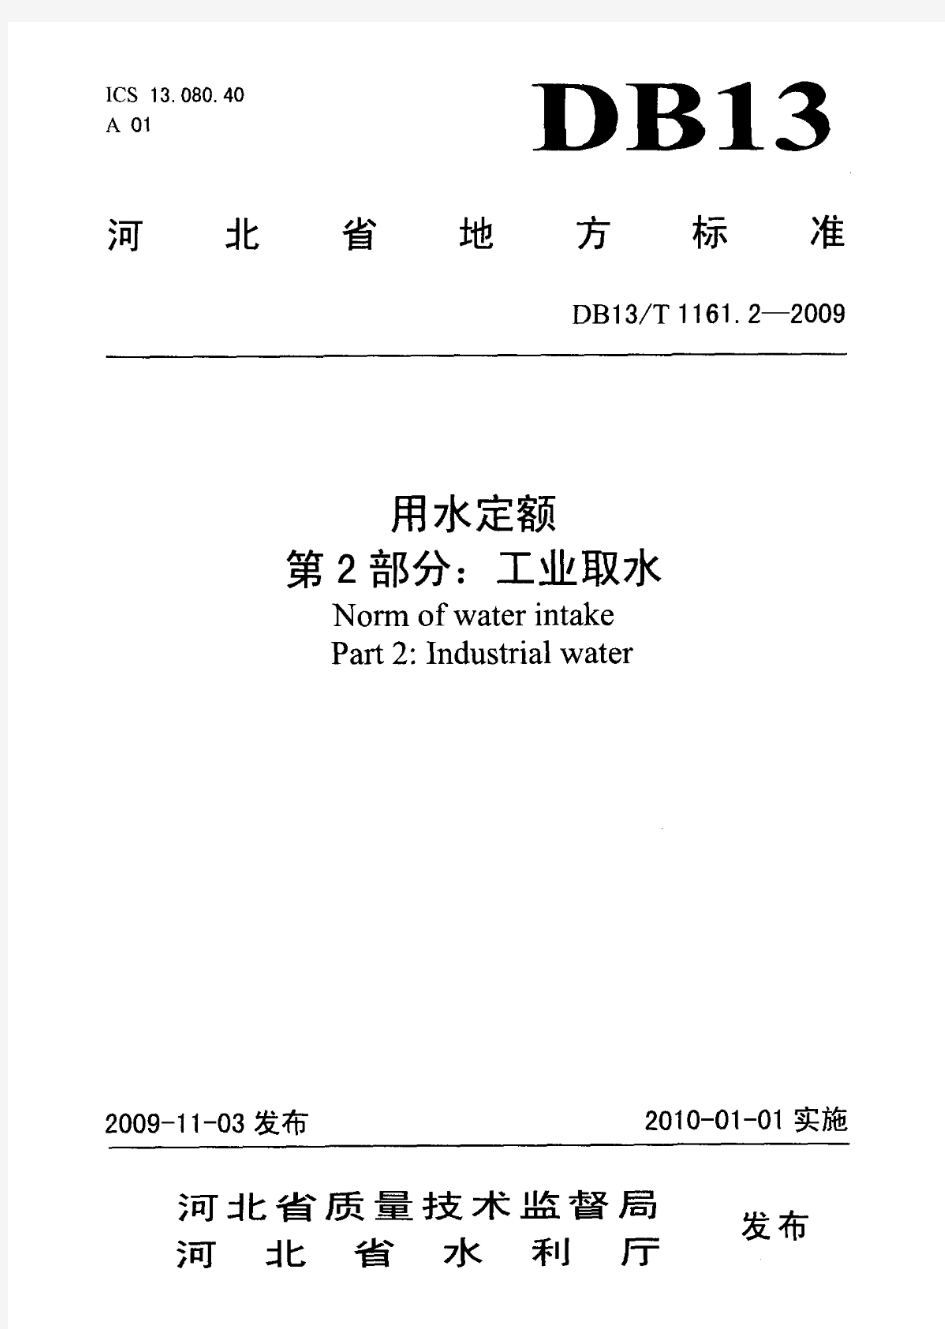 河北省用水定额DB13_T_1161.2-2009工业